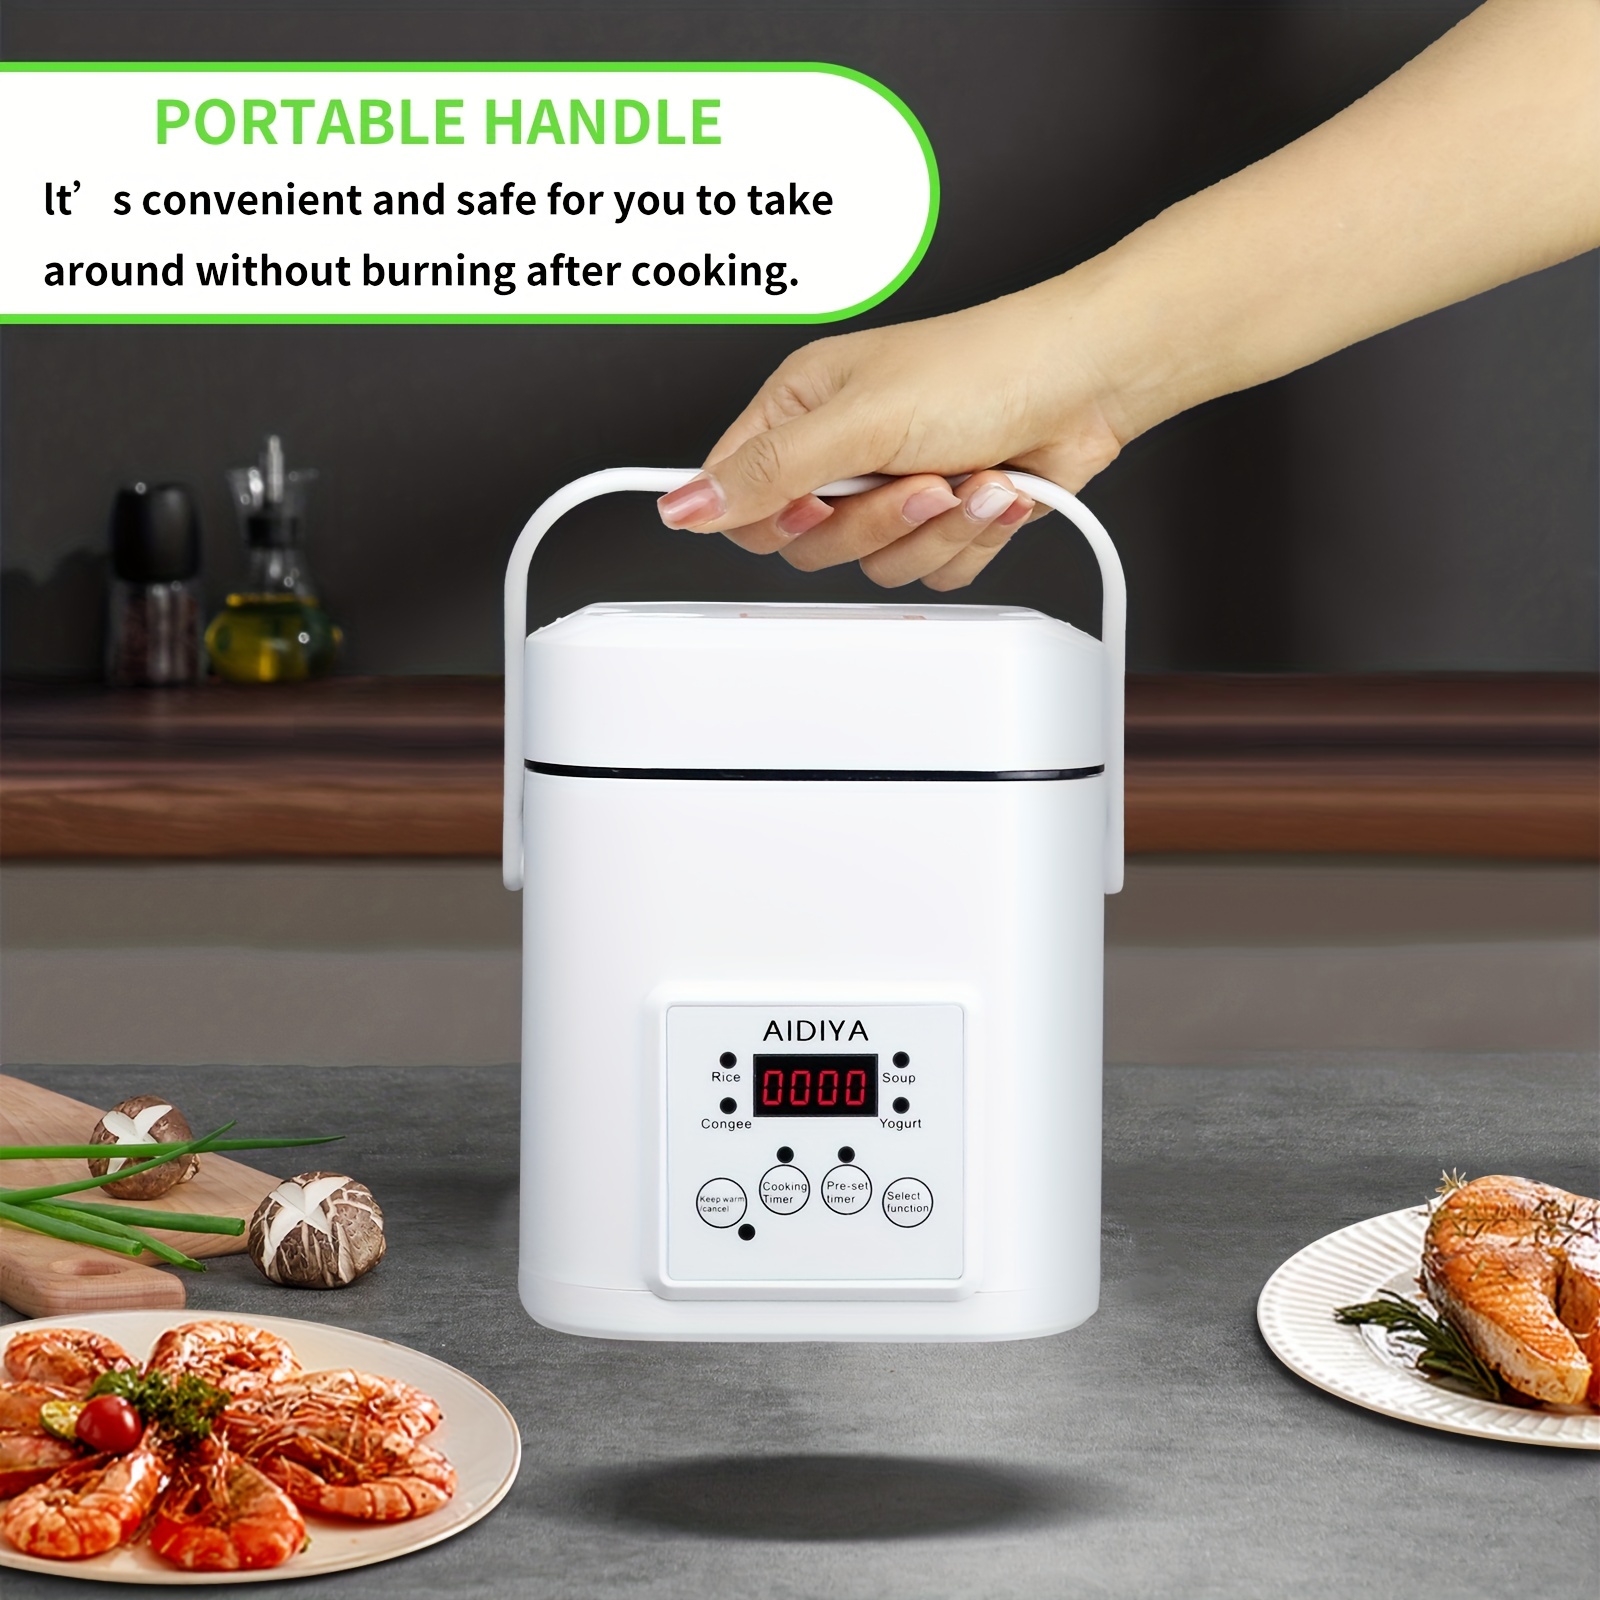 Vinnsels Mini Rice Cooker - Nonstick Inner Pot, Portable & Travel